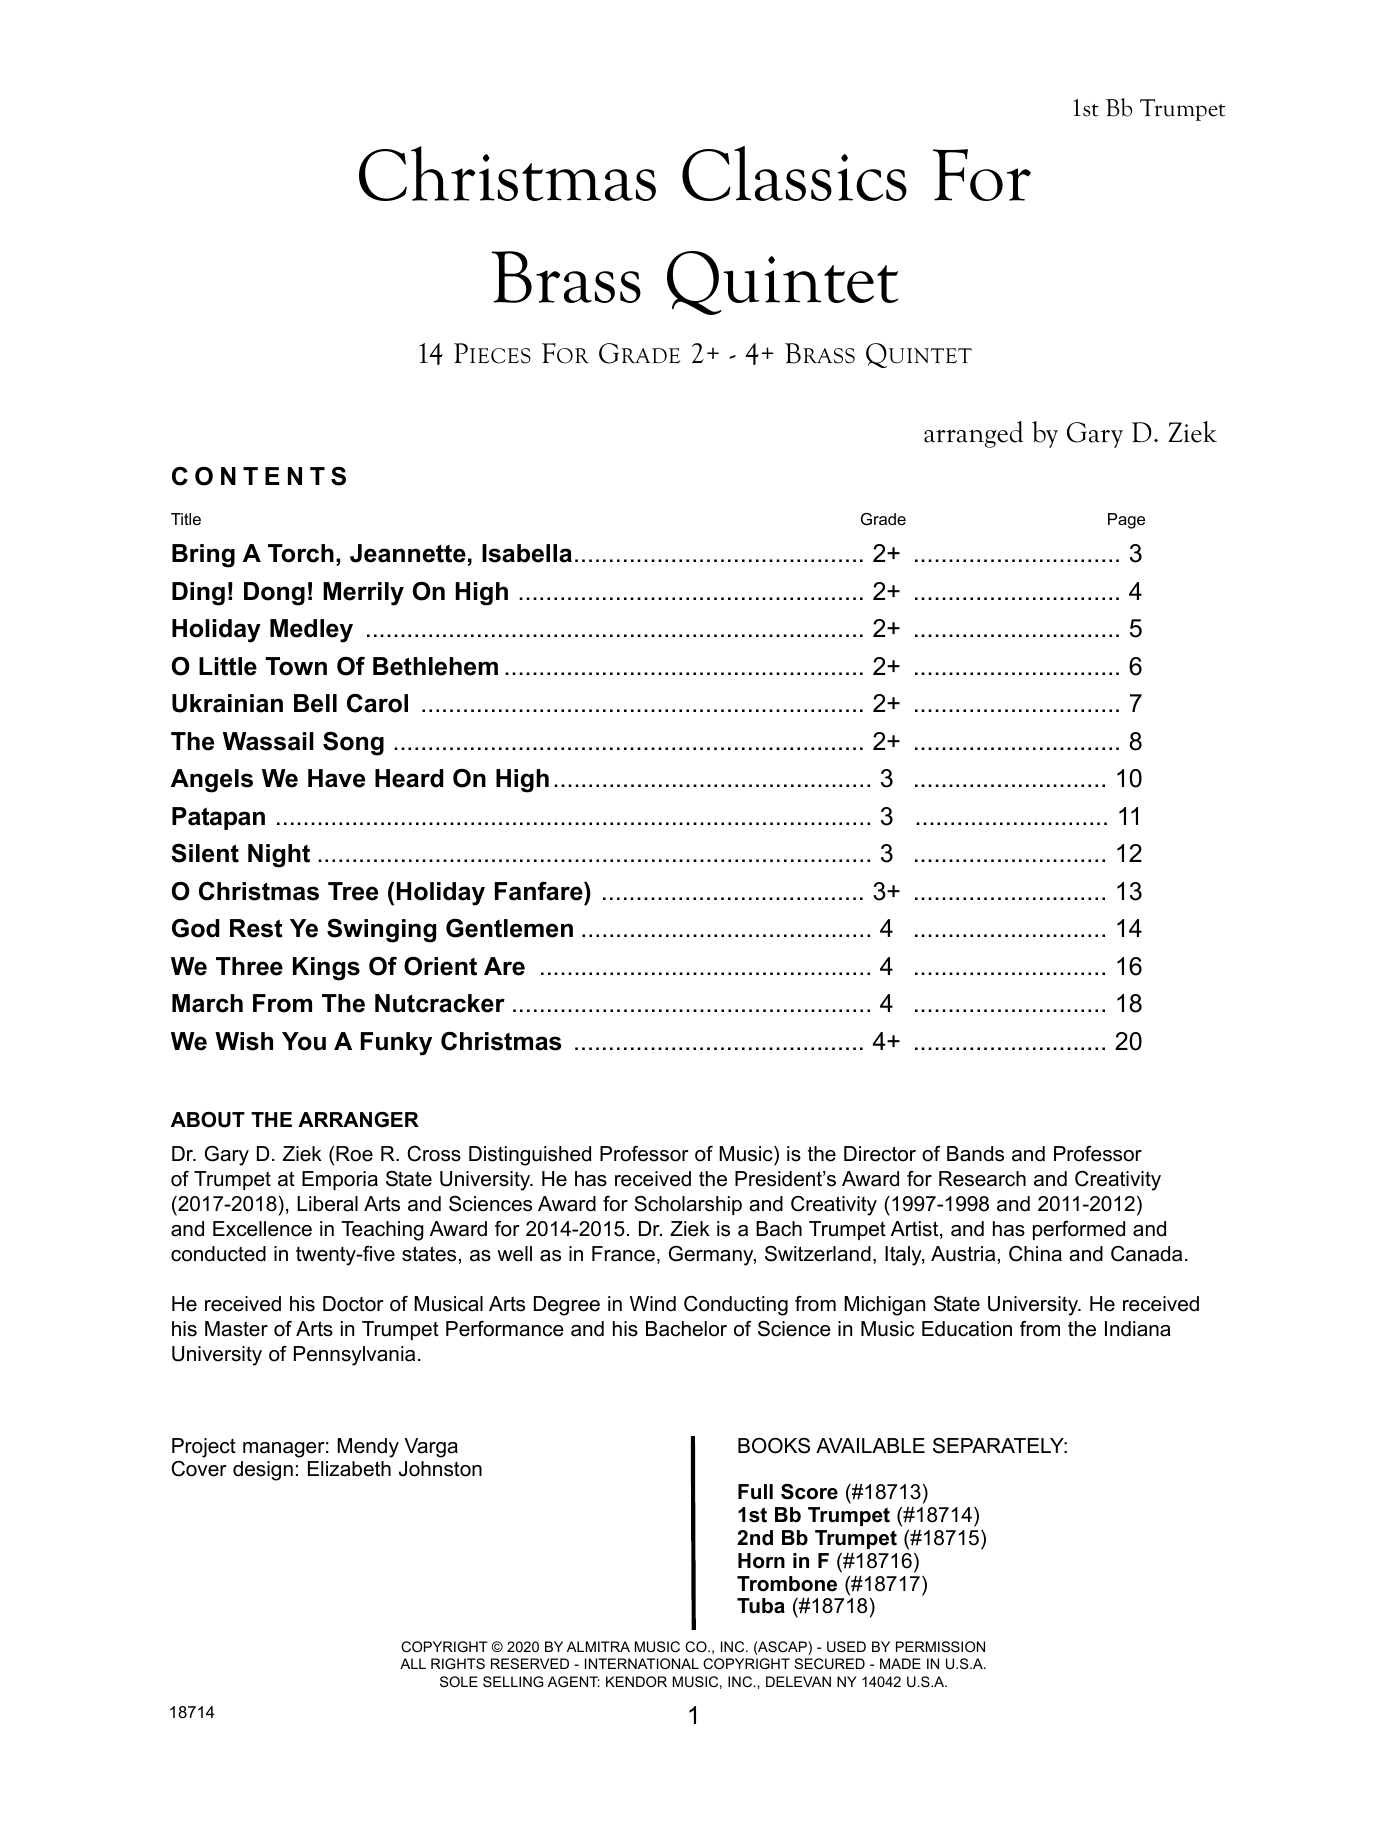 Download Gary Ziek Christmas Classics For Brass Quintet - Sheet Music